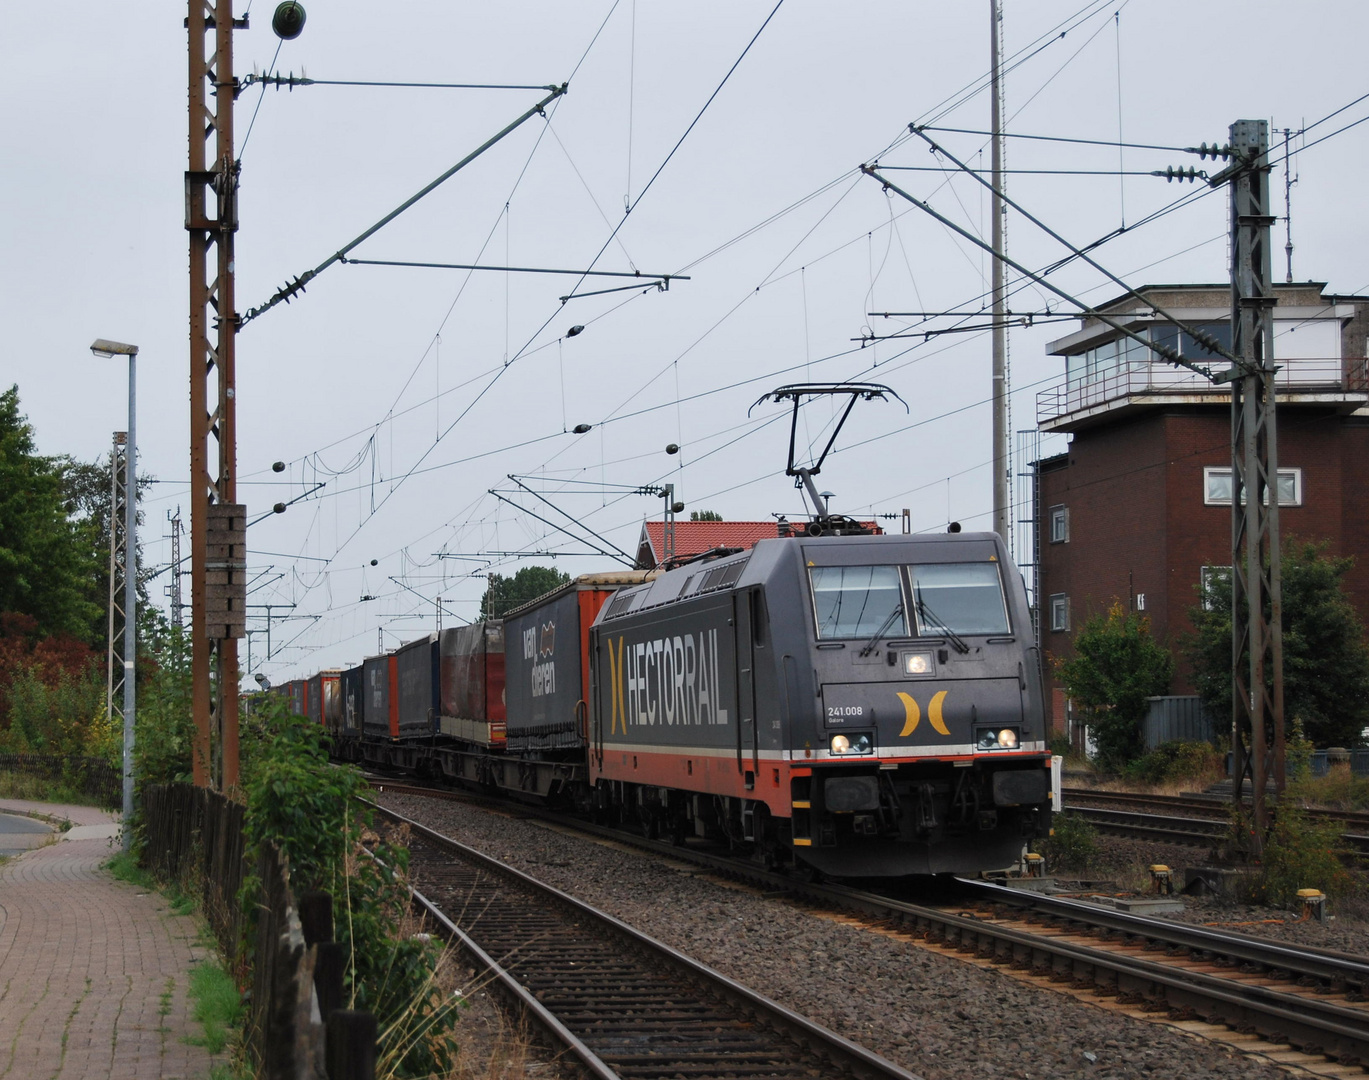 241 008 "Galore" von Hectorrail mit dem KLV nach Wanne Eickel